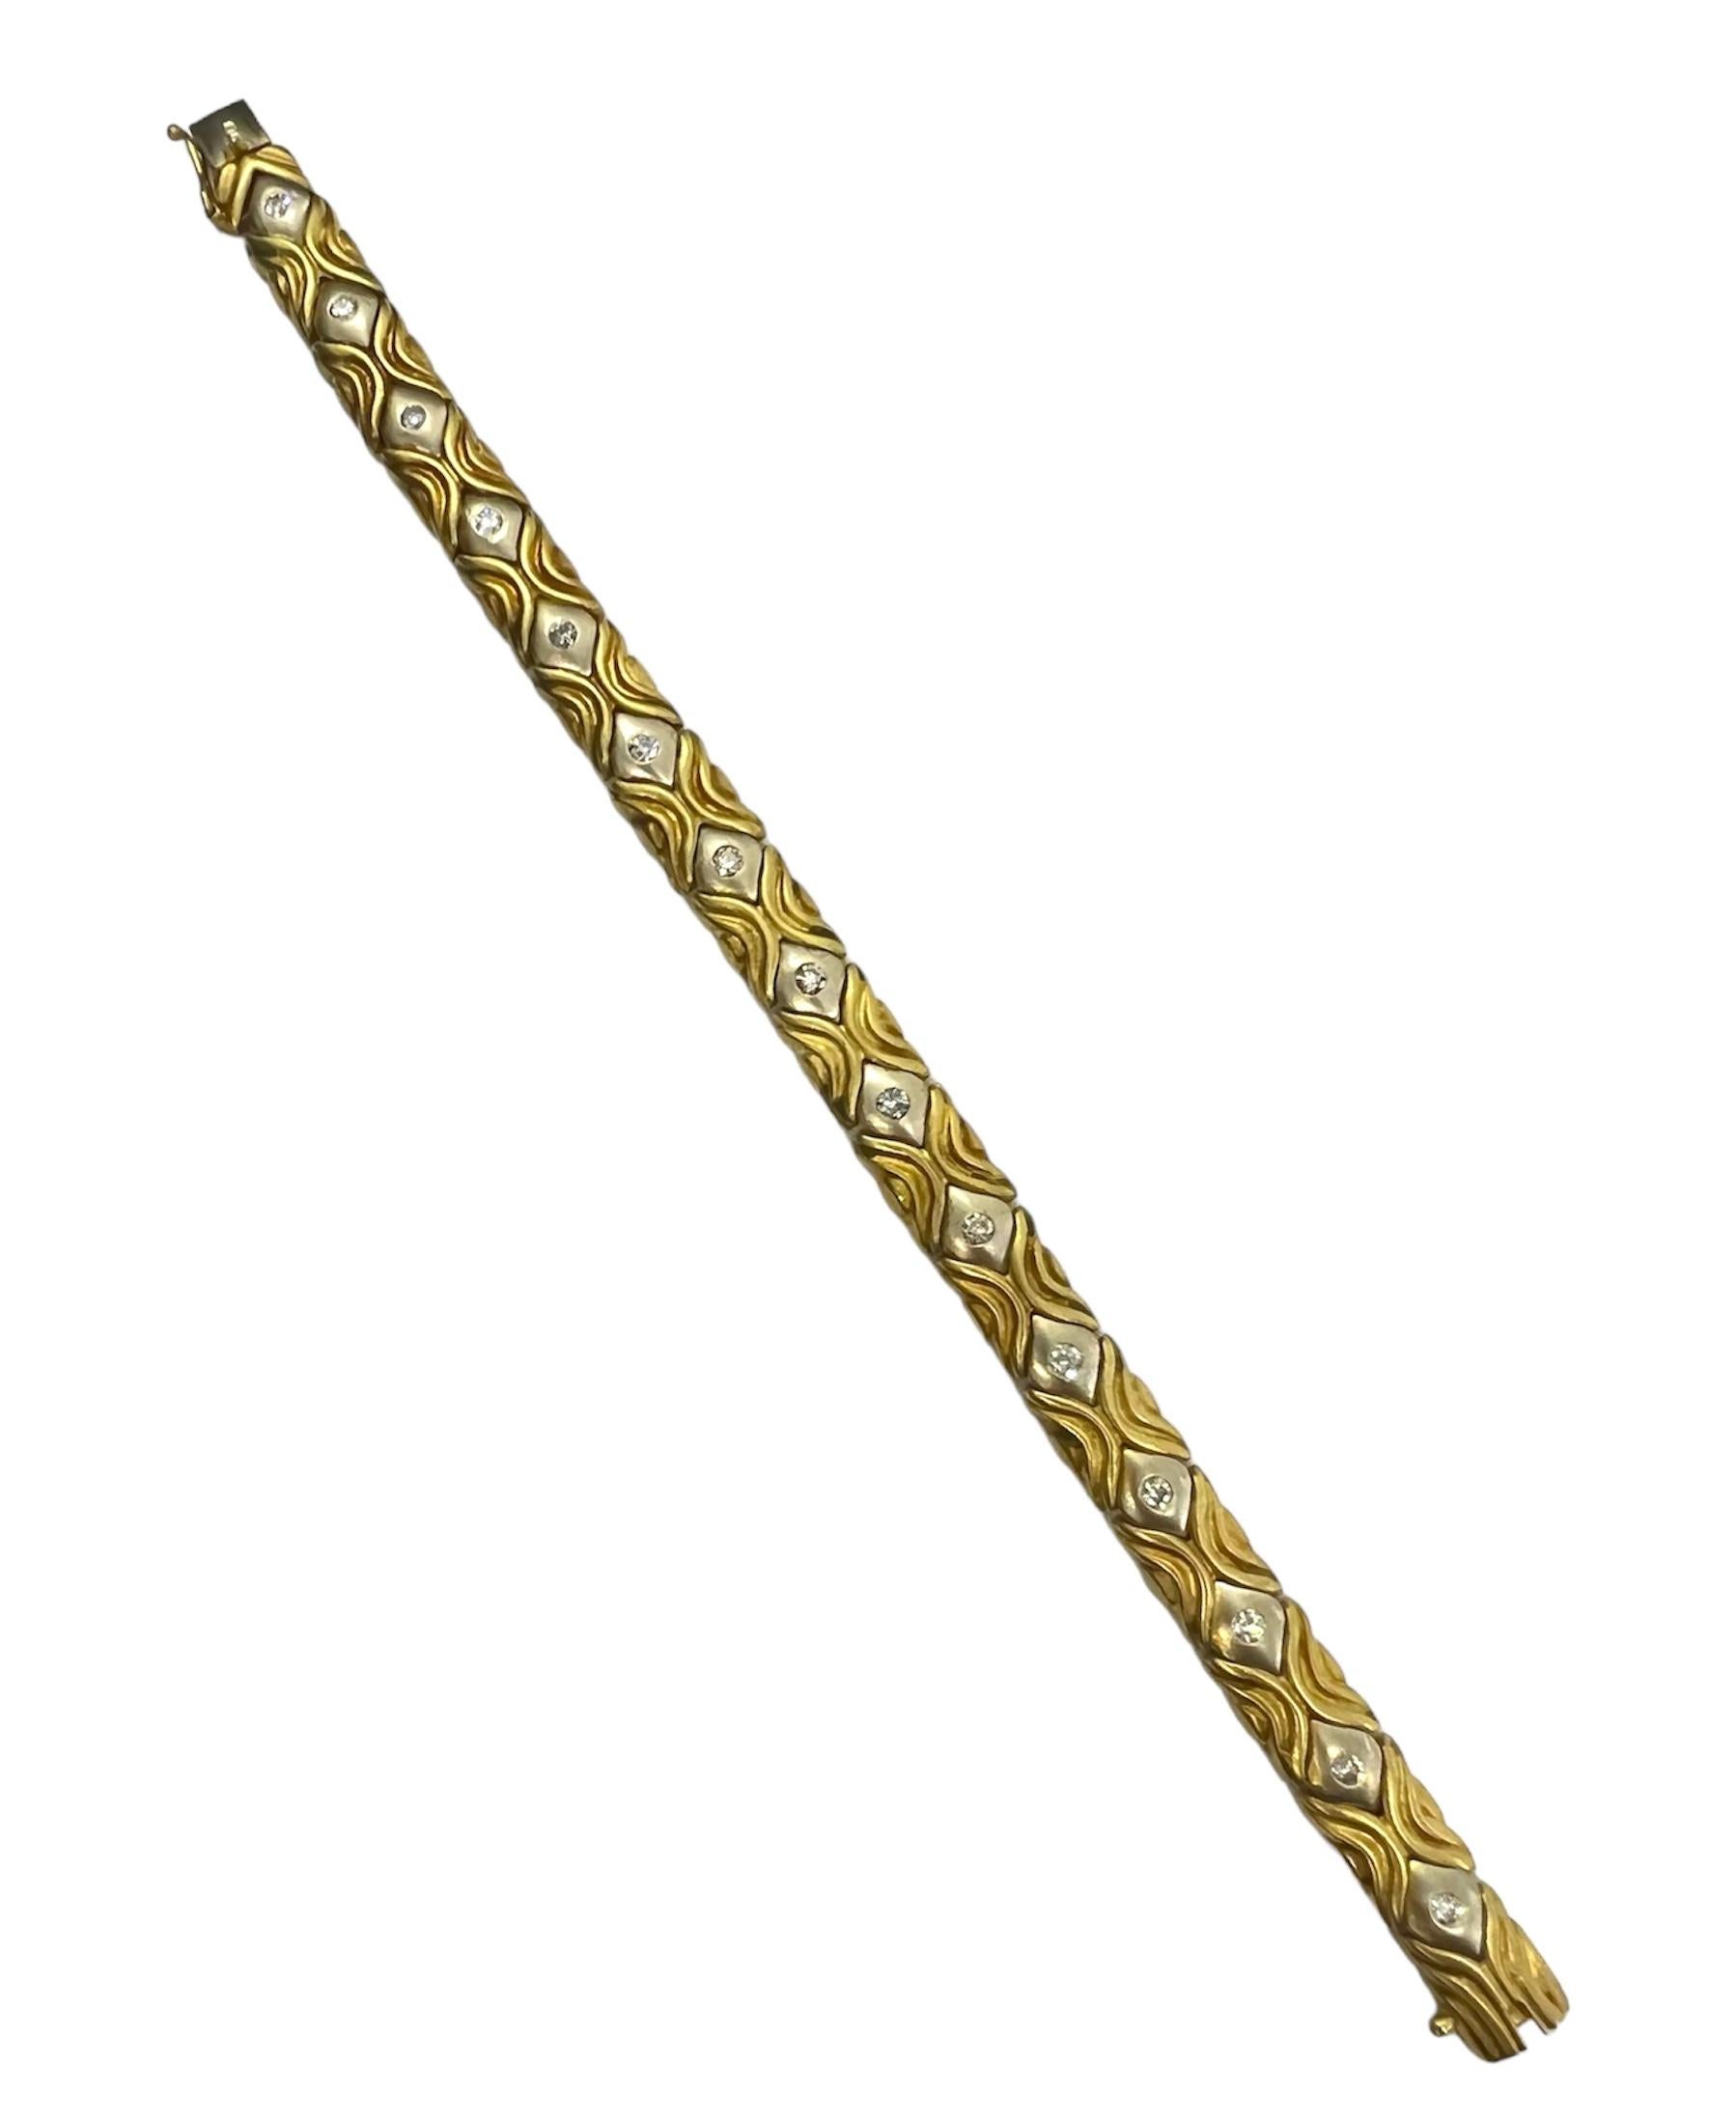 Armband aus 14 Karat Gelbgold und Weißgold mit Diamanten.

Sophia D von Joseph Dardashti LTD ist seit 35 Jahren weltweit bekannt und lässt sich vom klassischen Art-Déco-Design inspirieren, das mit modernen Fertigungstechniken verschmilzt.
